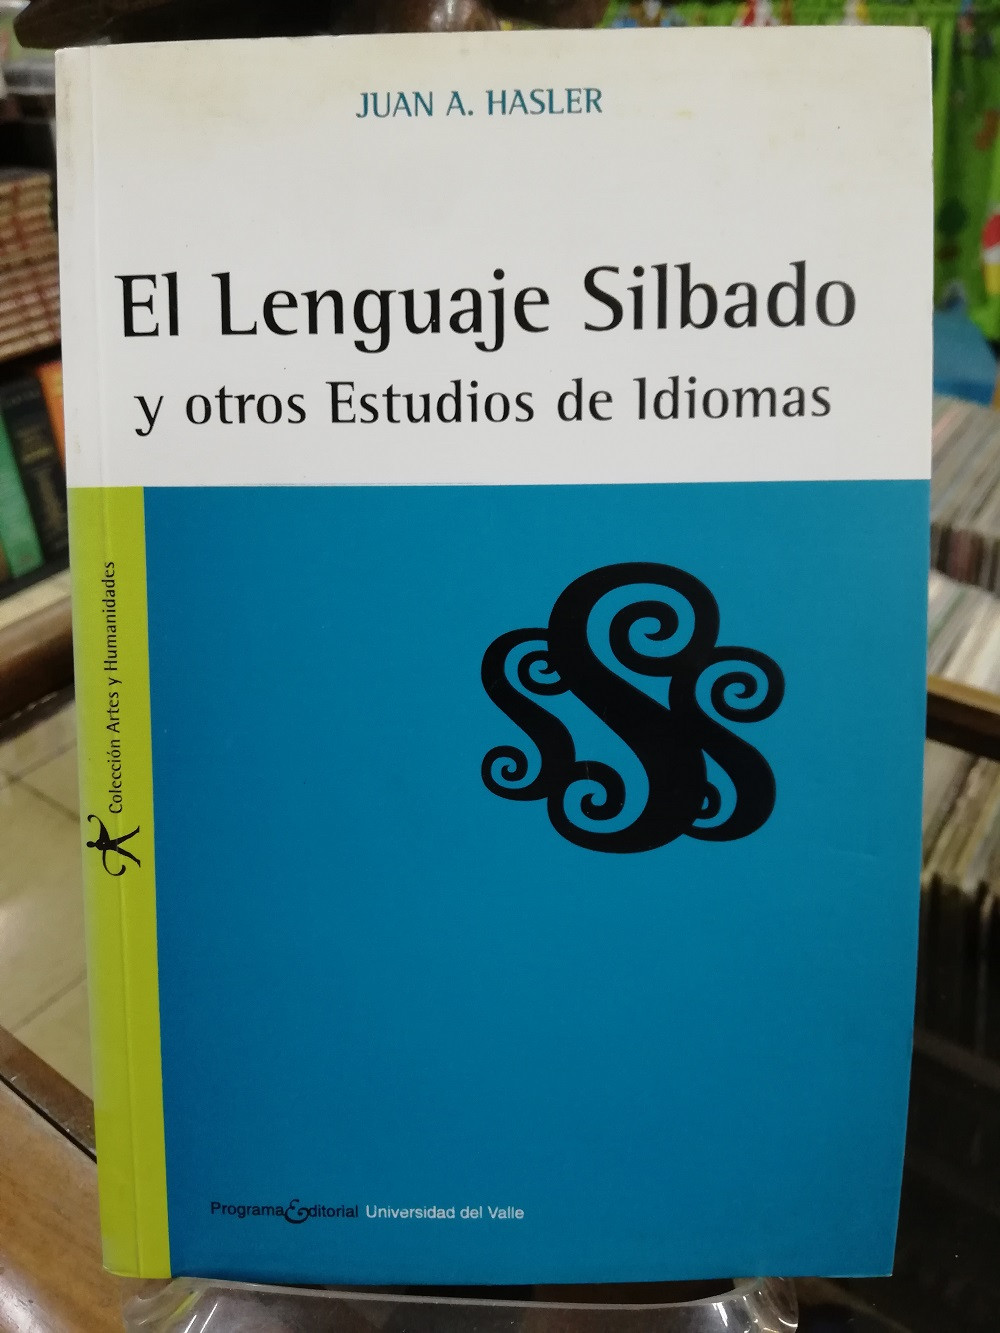 Imagen EL LENGUAJE SILBADO Y OTROS ESTUDIOS DE IDIOMAS - JUAN A. HASLER 1